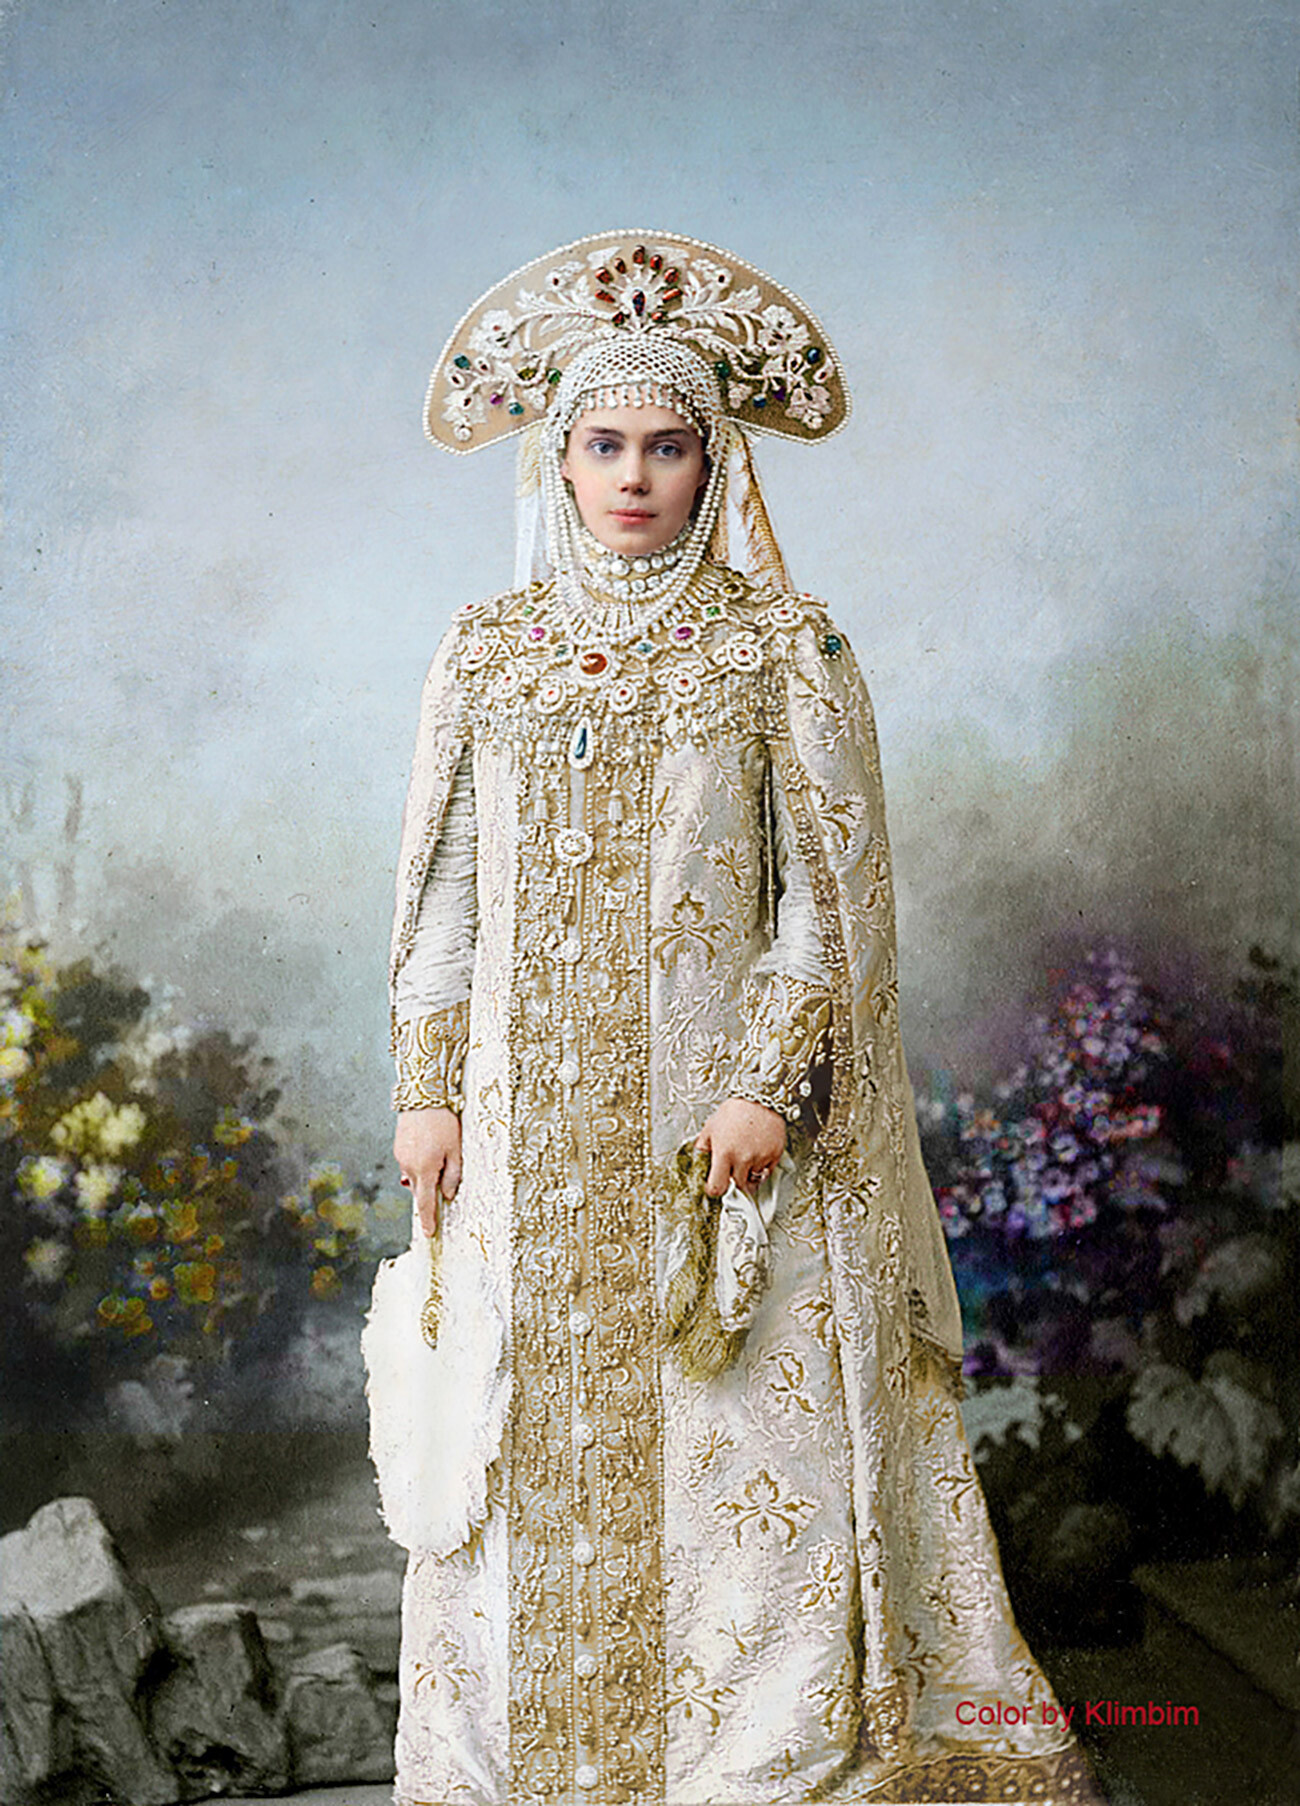 Grand Duchess Kseniya Aleksandrovna